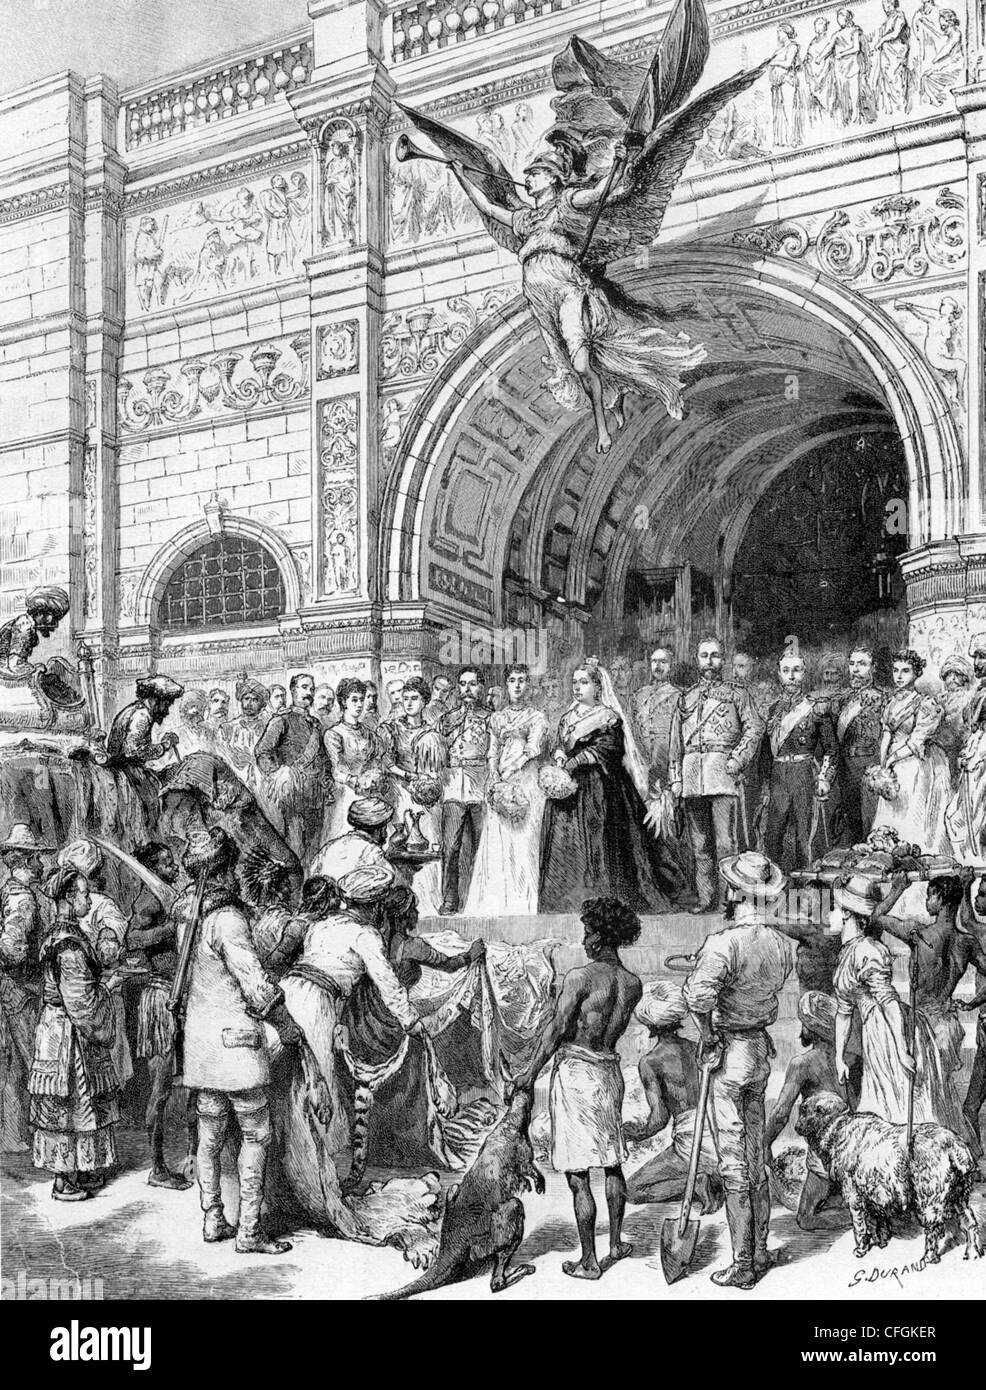 Königin VICTORIA eröffnet das Imperial Institute on Exhibition Road, London, 1893 Stockfoto